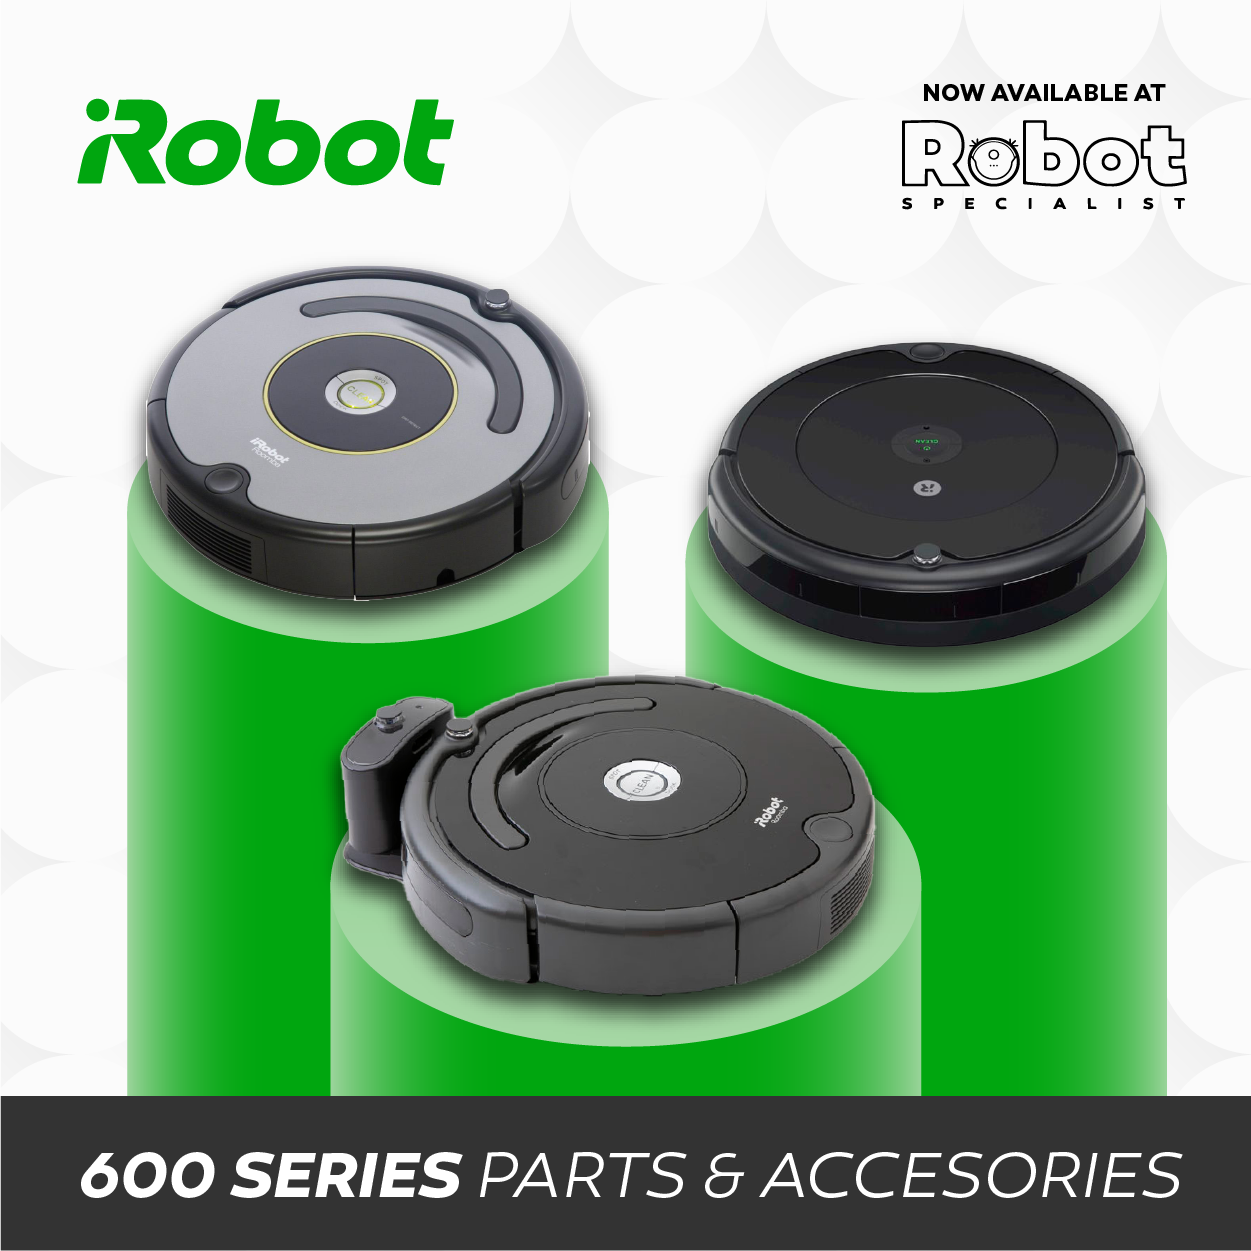 iRobot Roomba 692 Robot Vacuum– Robot Specialist